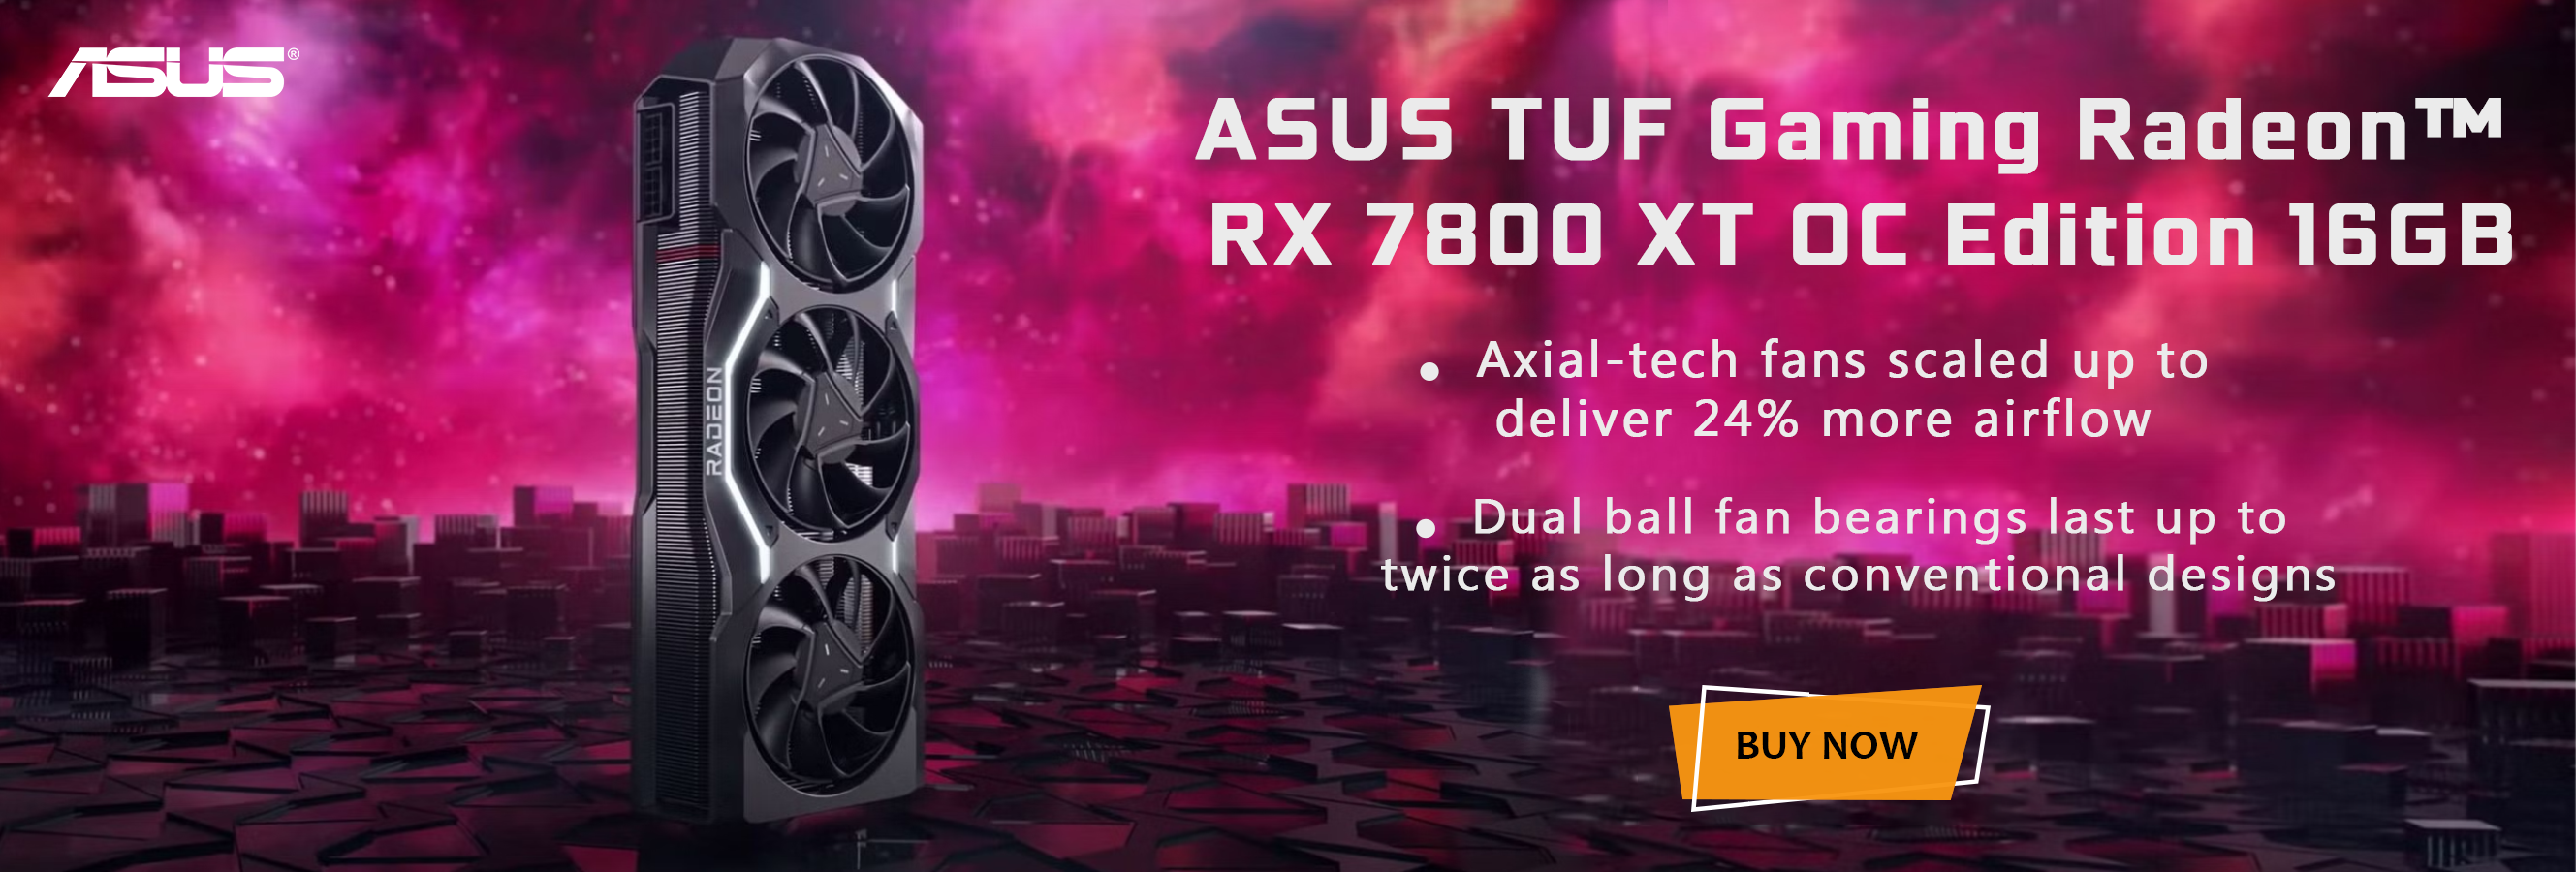 Asus TUF Gaming Radeon RX 7800 XT OC Edition 16GB GDDR6